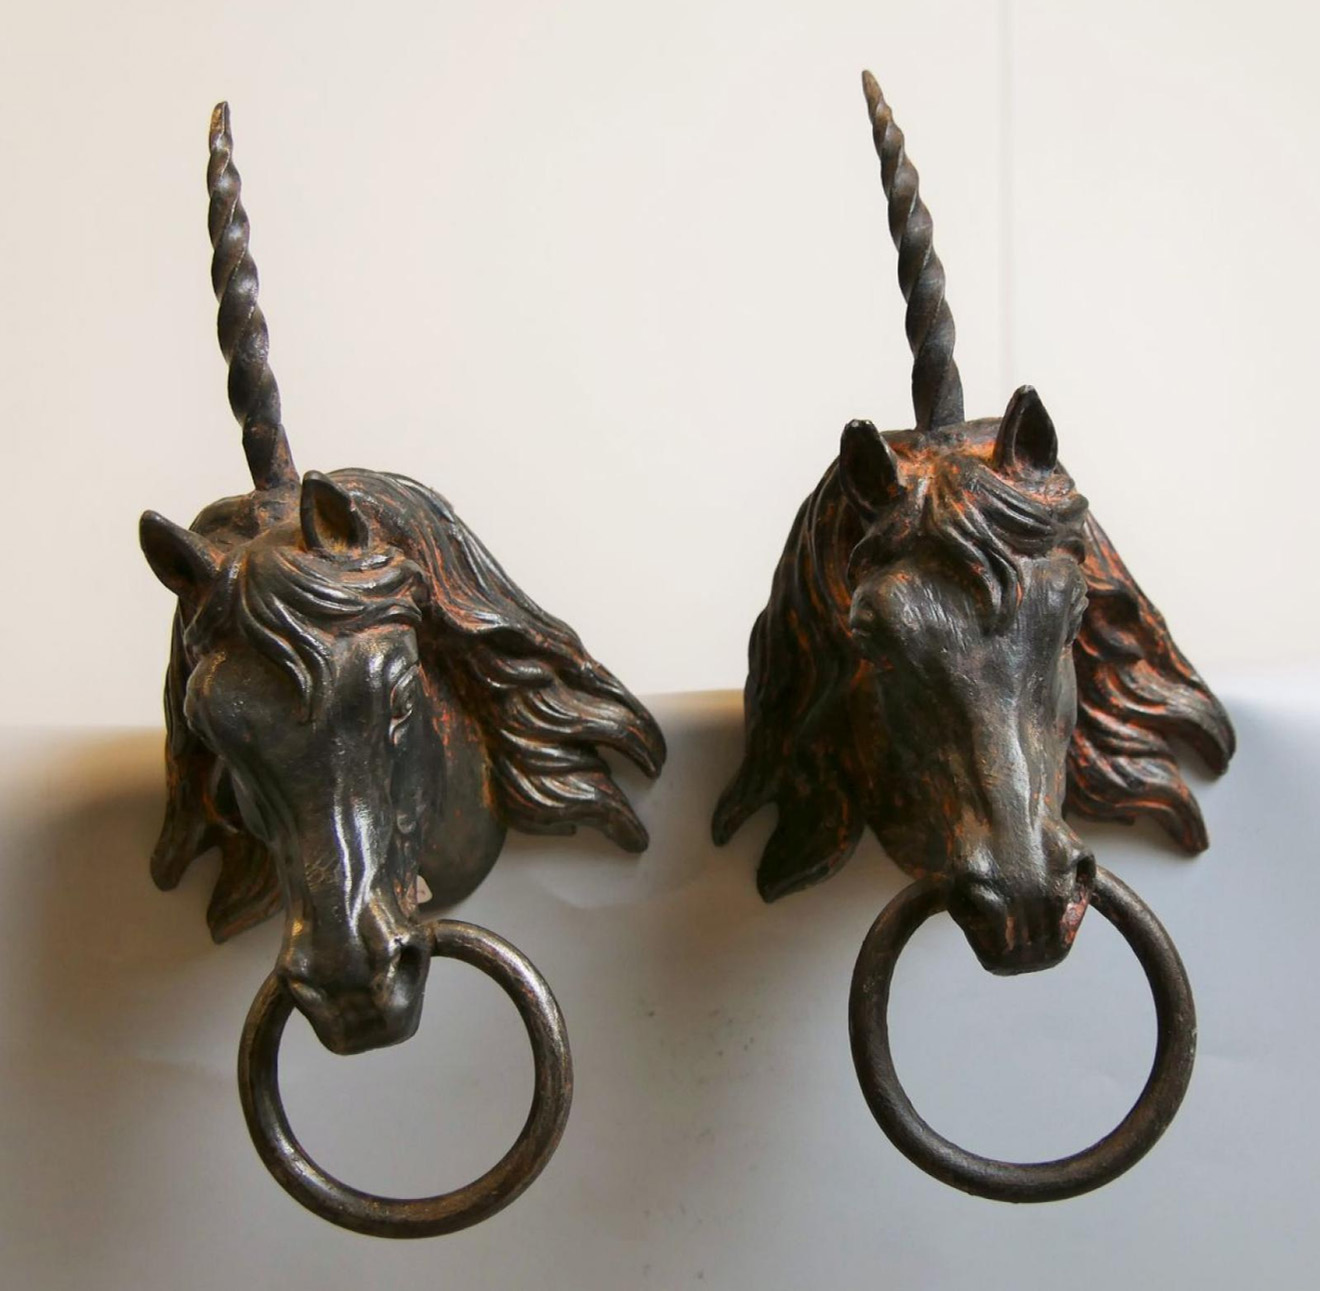 404 € Paire d’anneaux attache chevaux en bronze, sculptés d’une tête de licorne, fin XIXe siècle.Paris, Drouot, 24 février 2017. Copages A